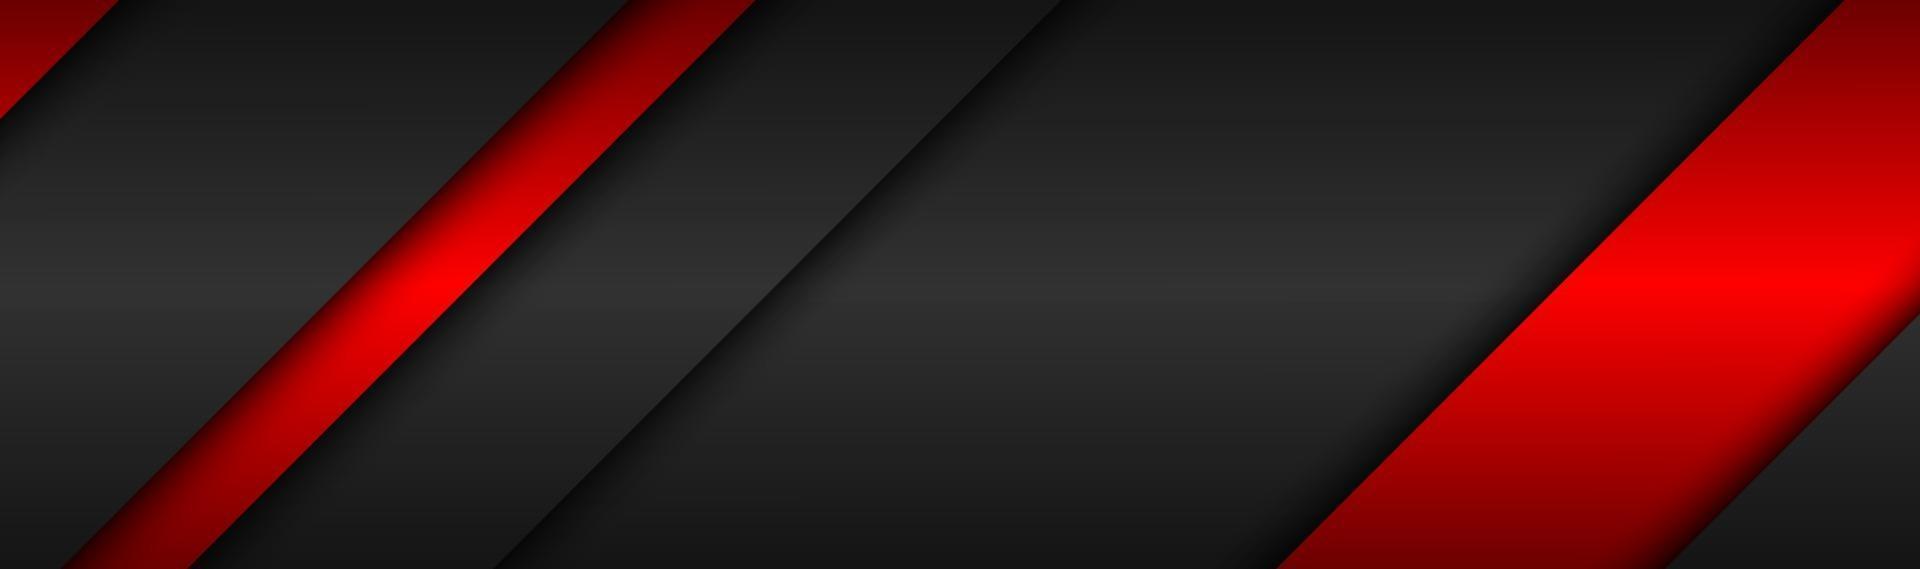 abstracto negro y rojo neón material moderno encabezado tecnología metálica banner vector abstracto fondo de pantalla ancha